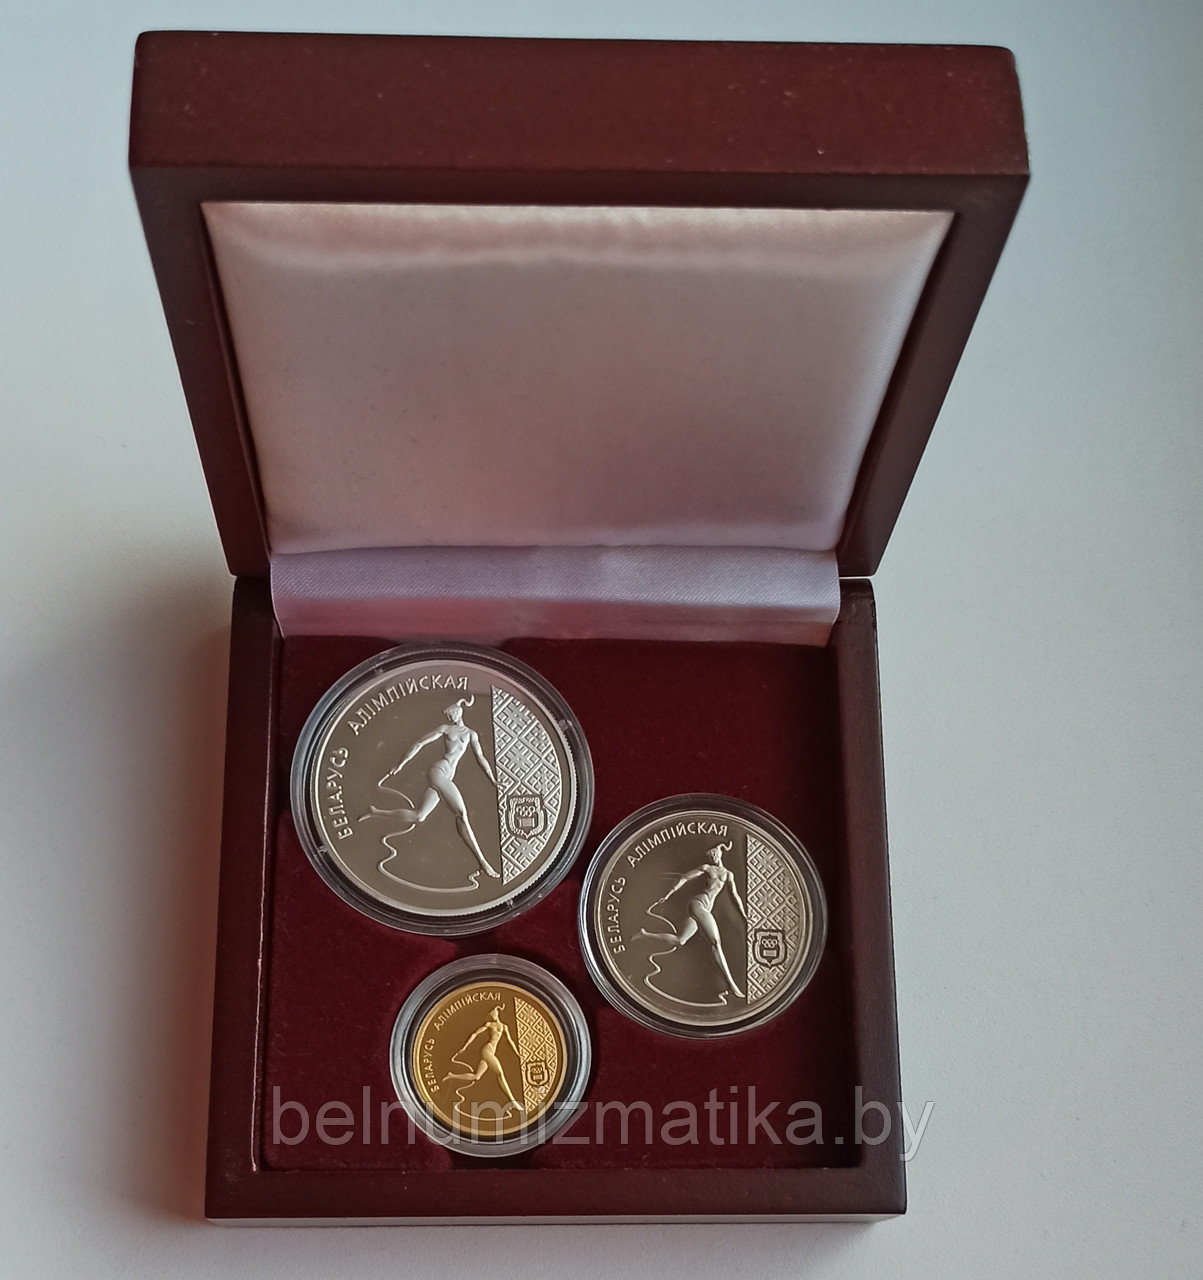 Художественная гимнастика, 1996 подарочный набор из 3 монет номиналами 1, 20 и 50 рублей в деревянном футляре